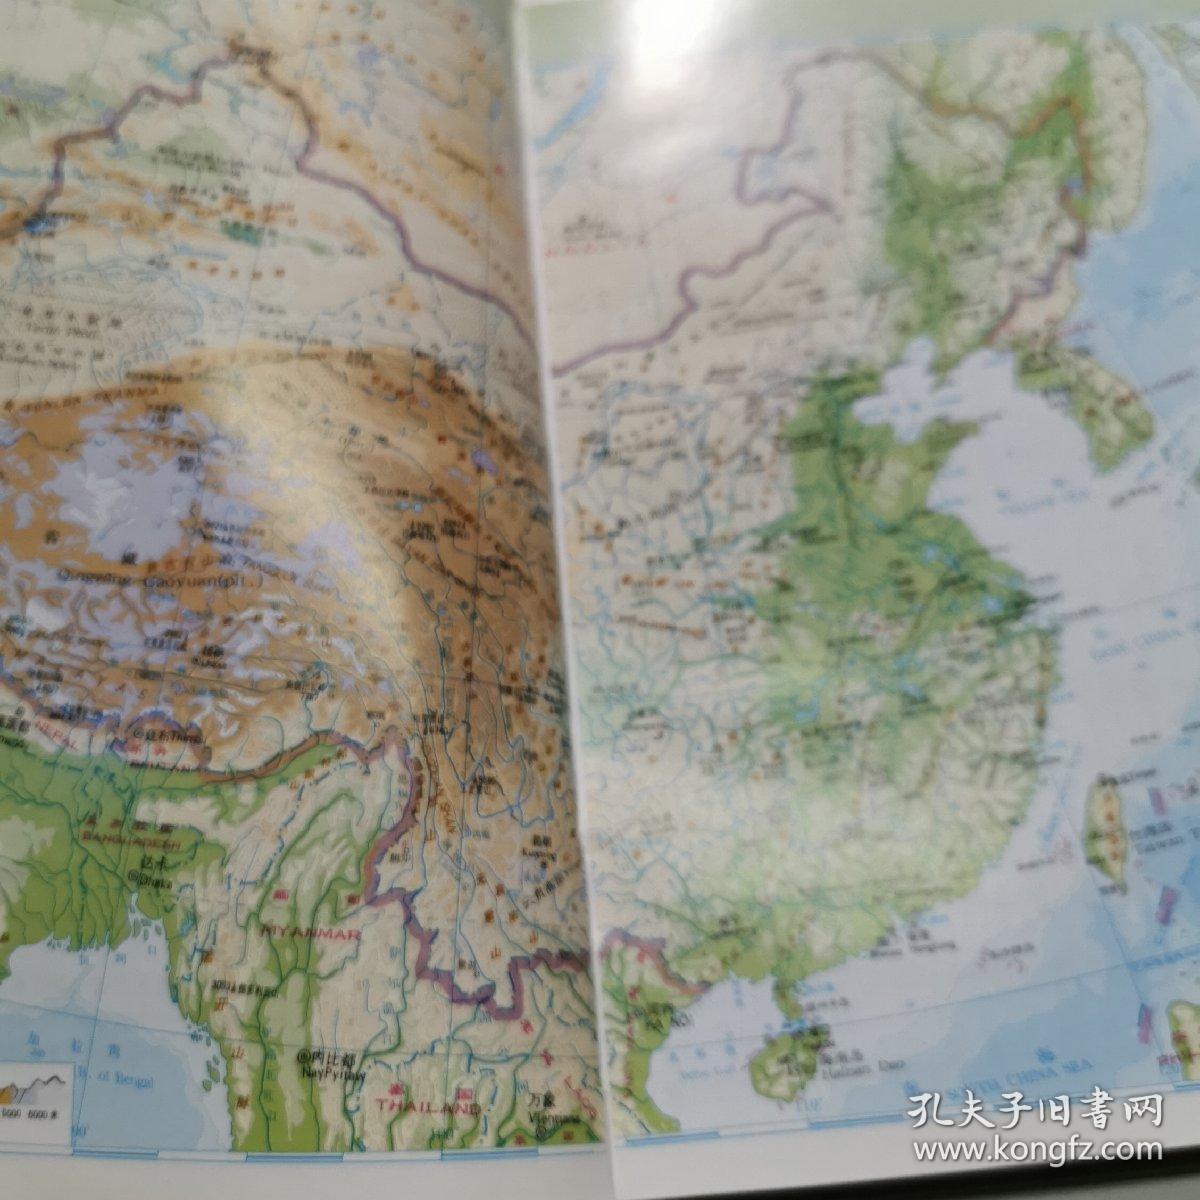 中国分省地图册